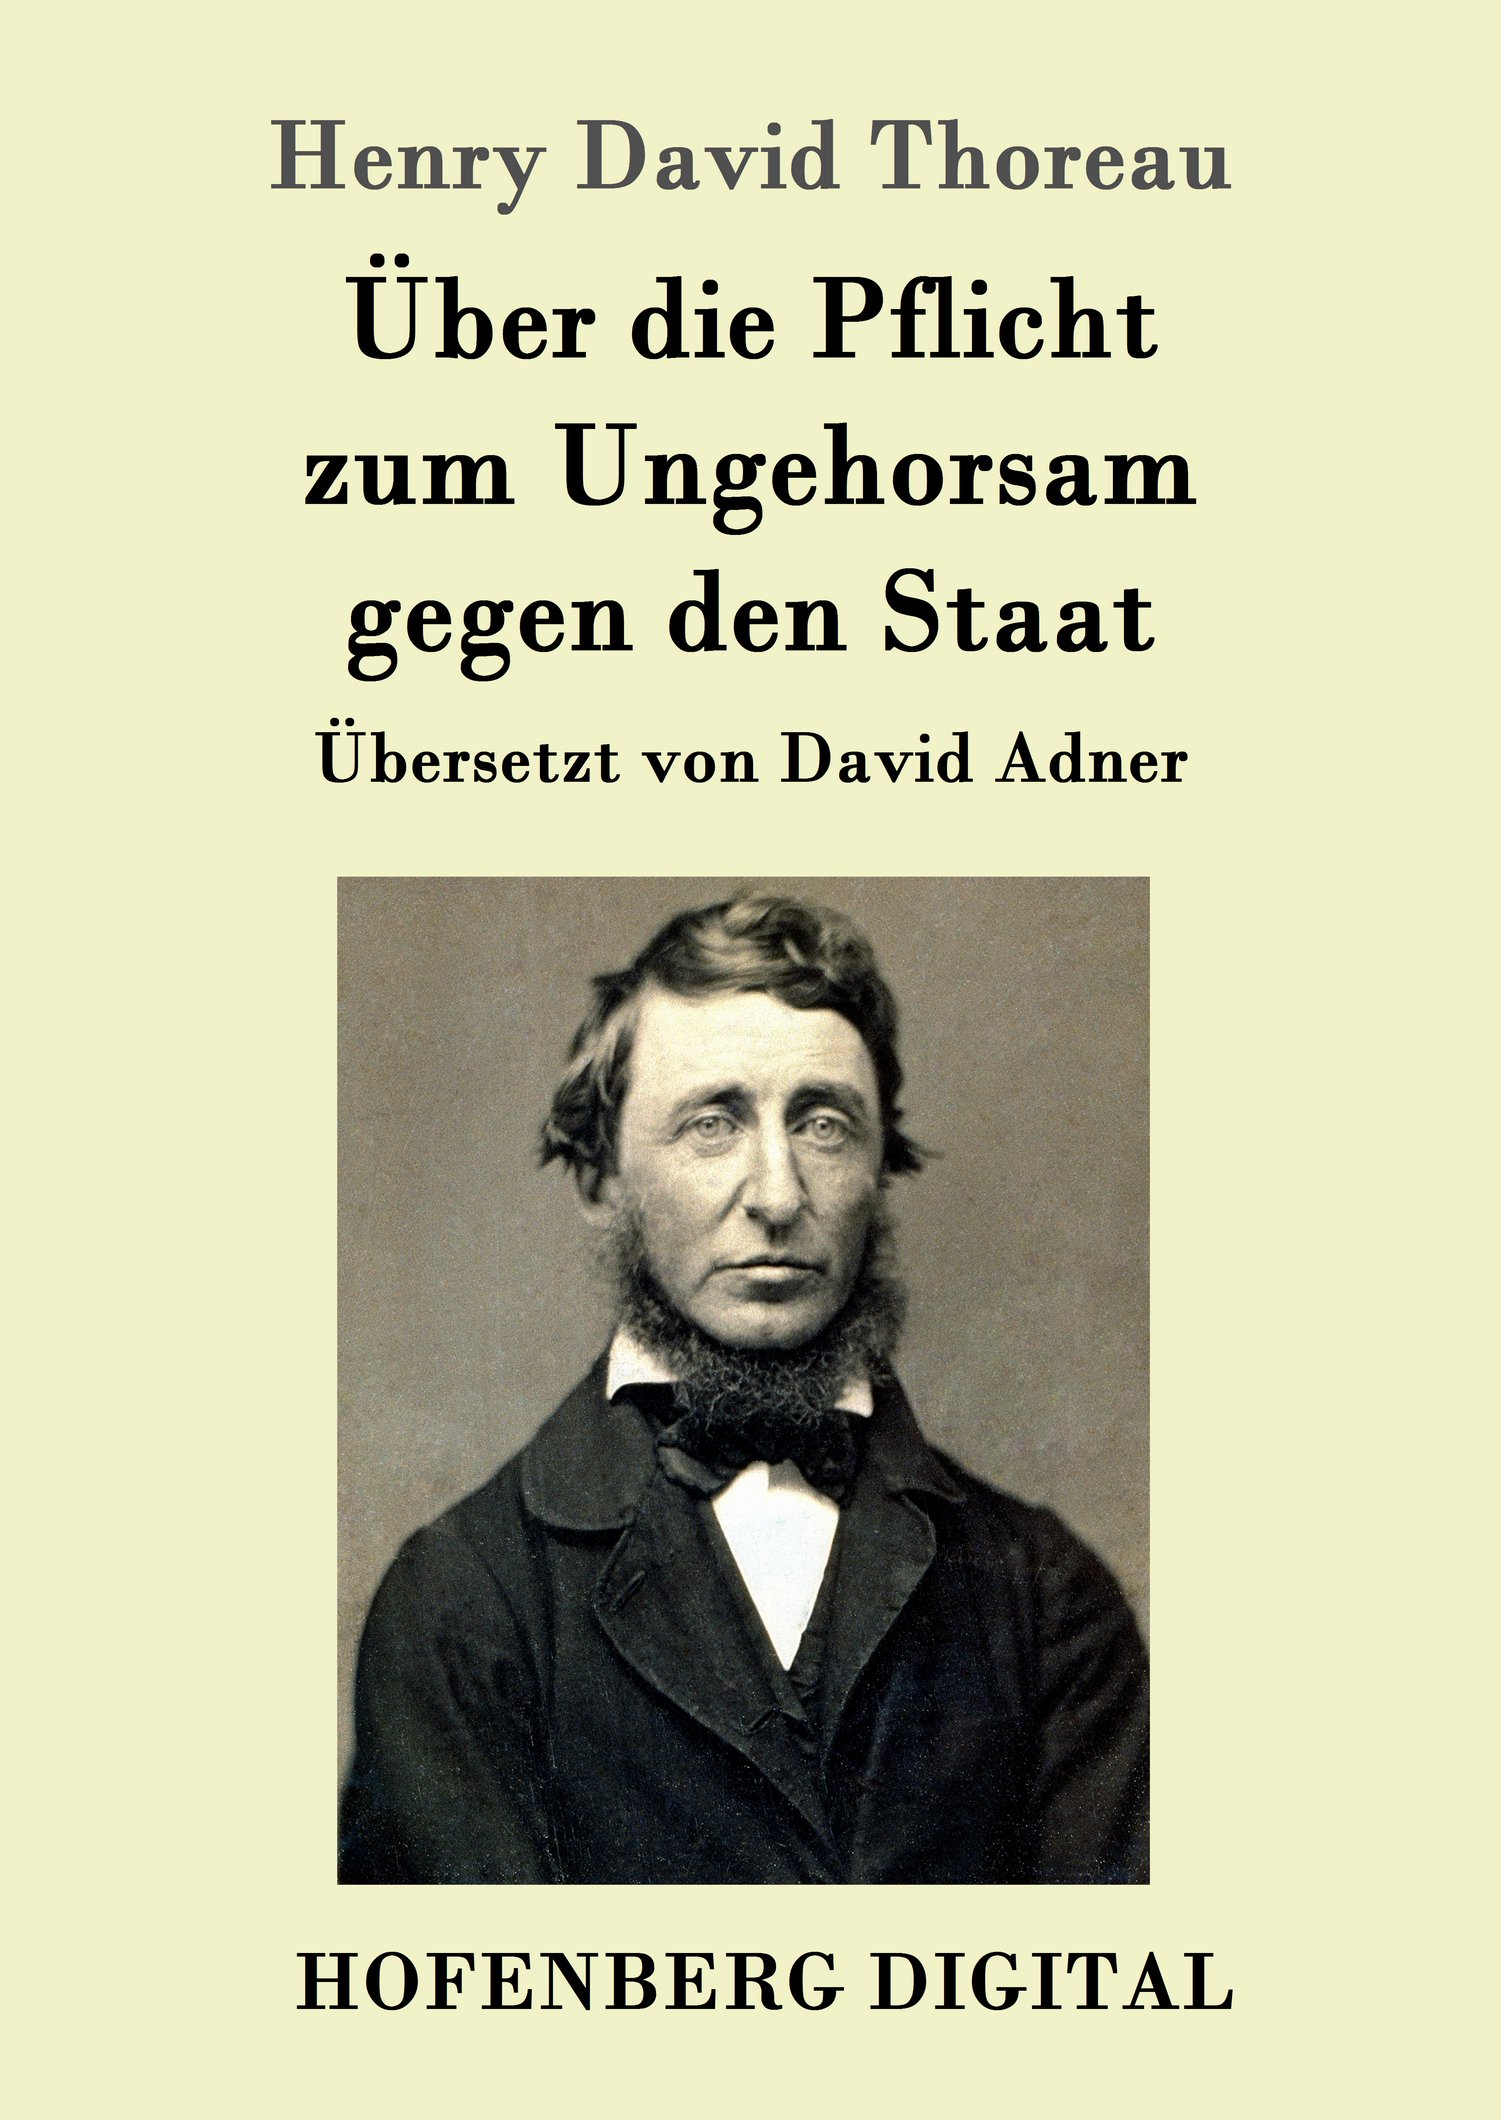 Henry David Thoreau: Über die Pflicht zum Ungehorsam gegen den Staat